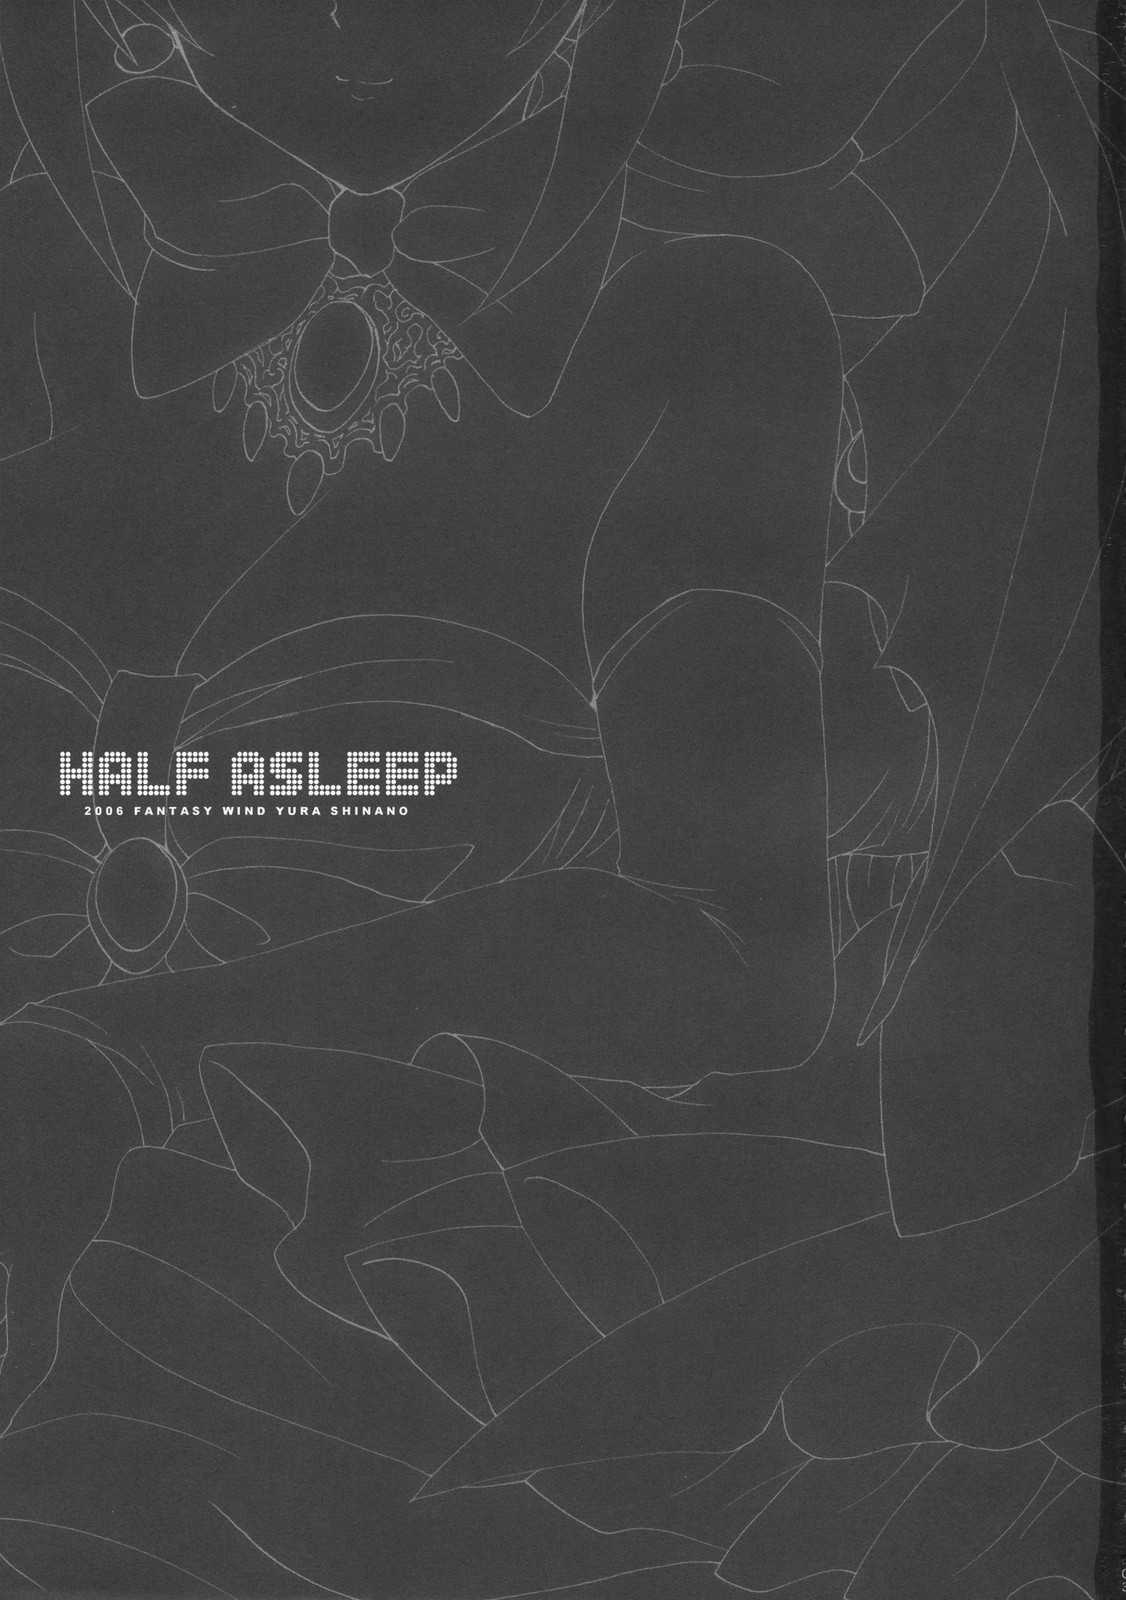 Half Asleep (Disgaea 2) [Fantasy Wind] [English] 